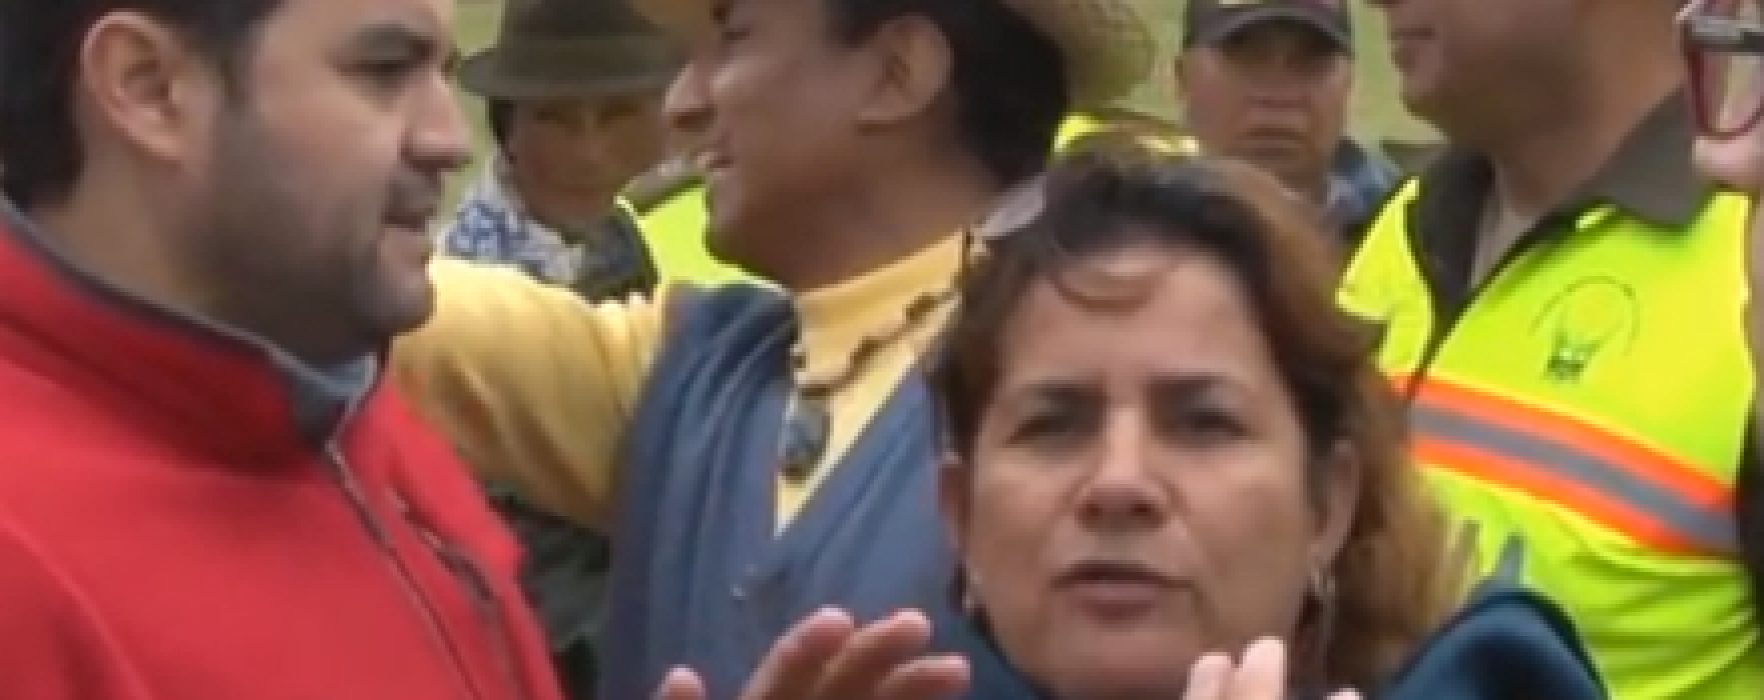 Ecuador: Seguro social campesino